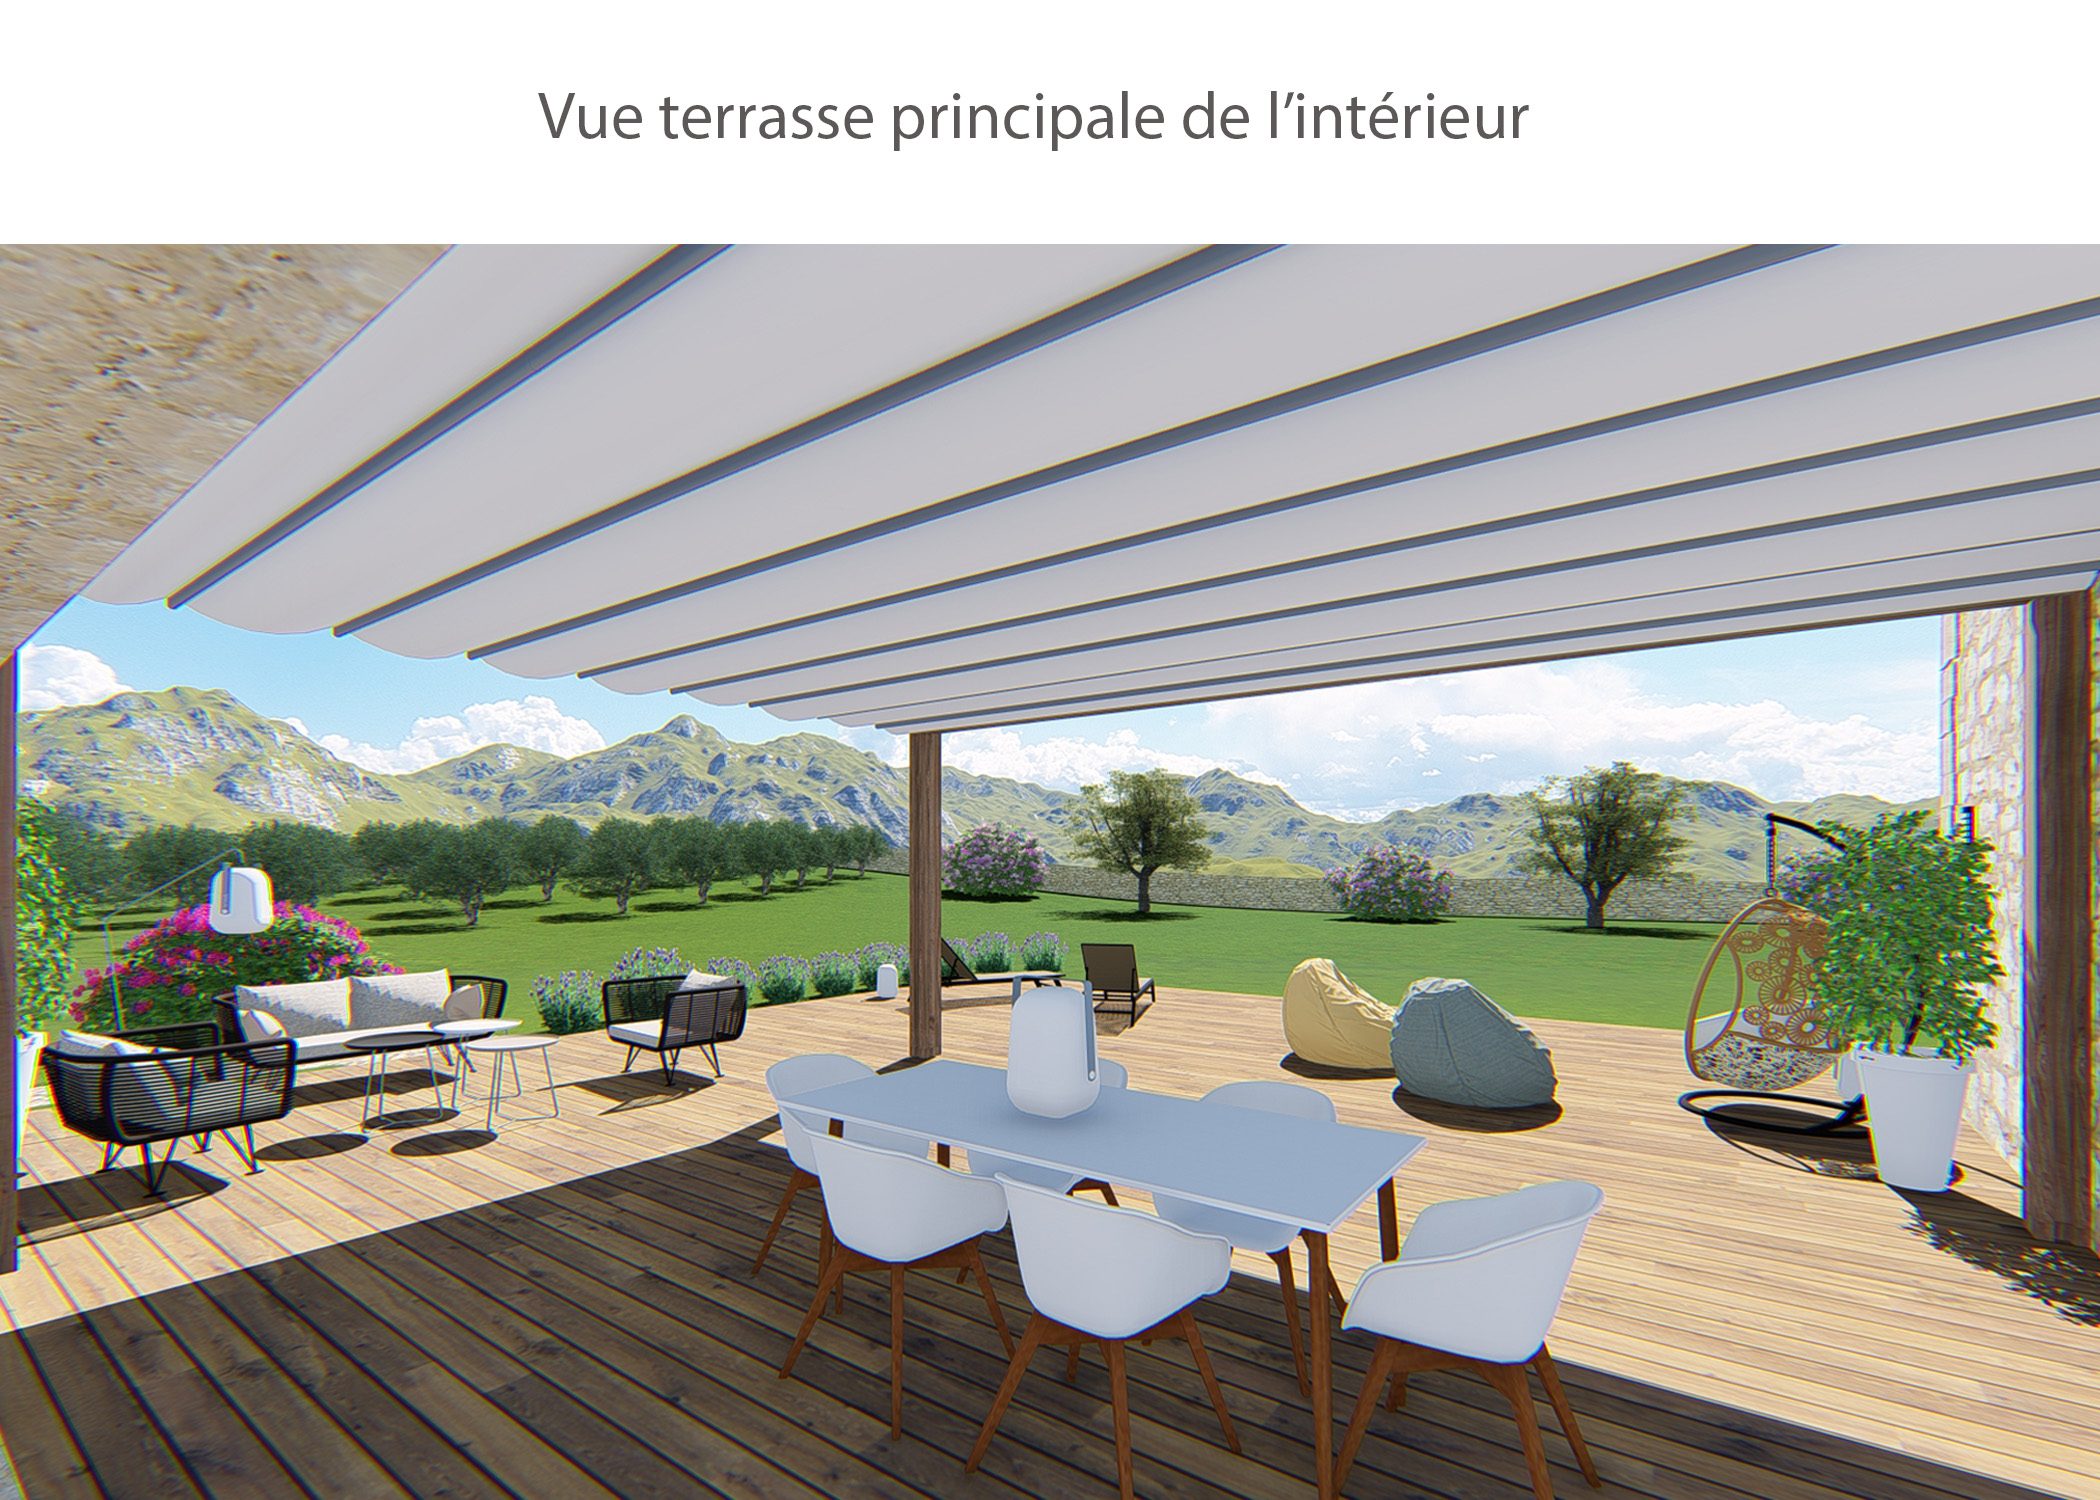 amenagement-decoration-maison de famille-campagne-provence-exterieur terrasse principale-dekho design